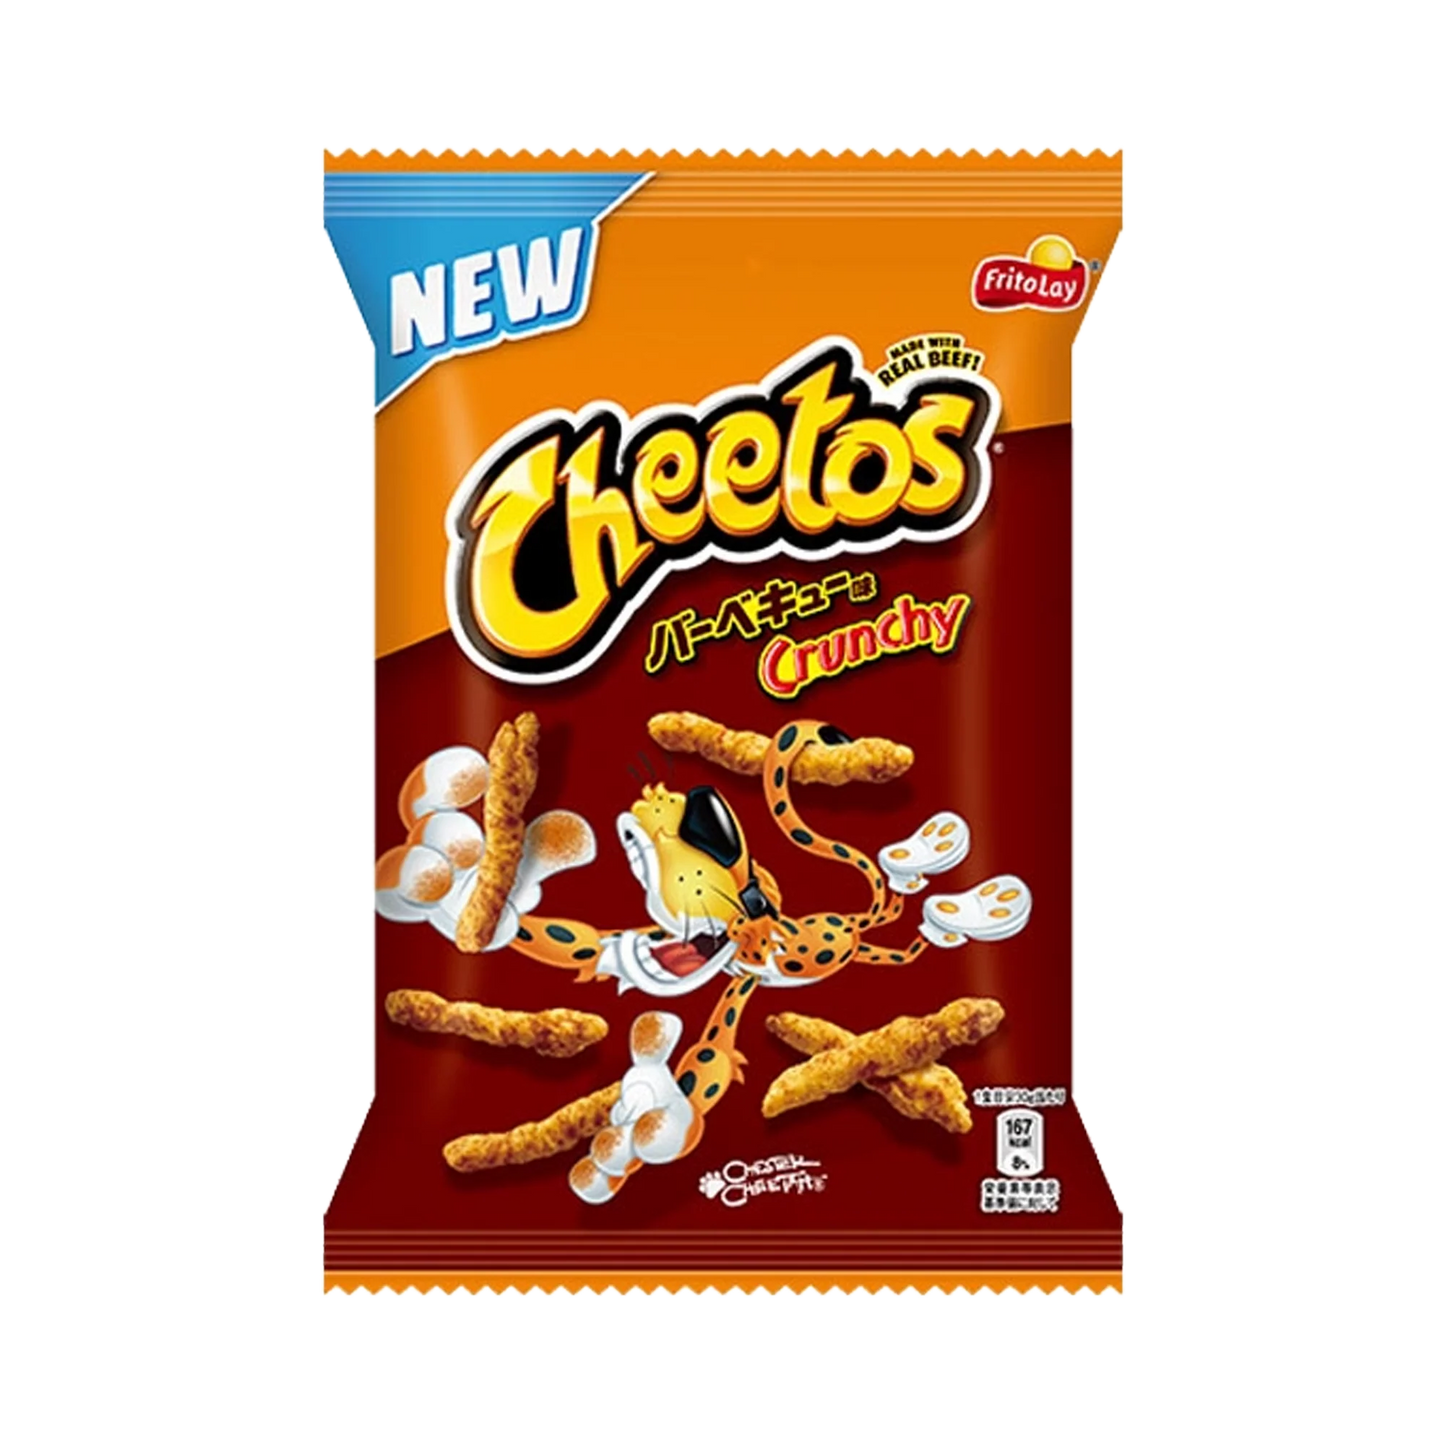 Cheetos Crunchy BBQ-Geschmack (Japan) - 75 g